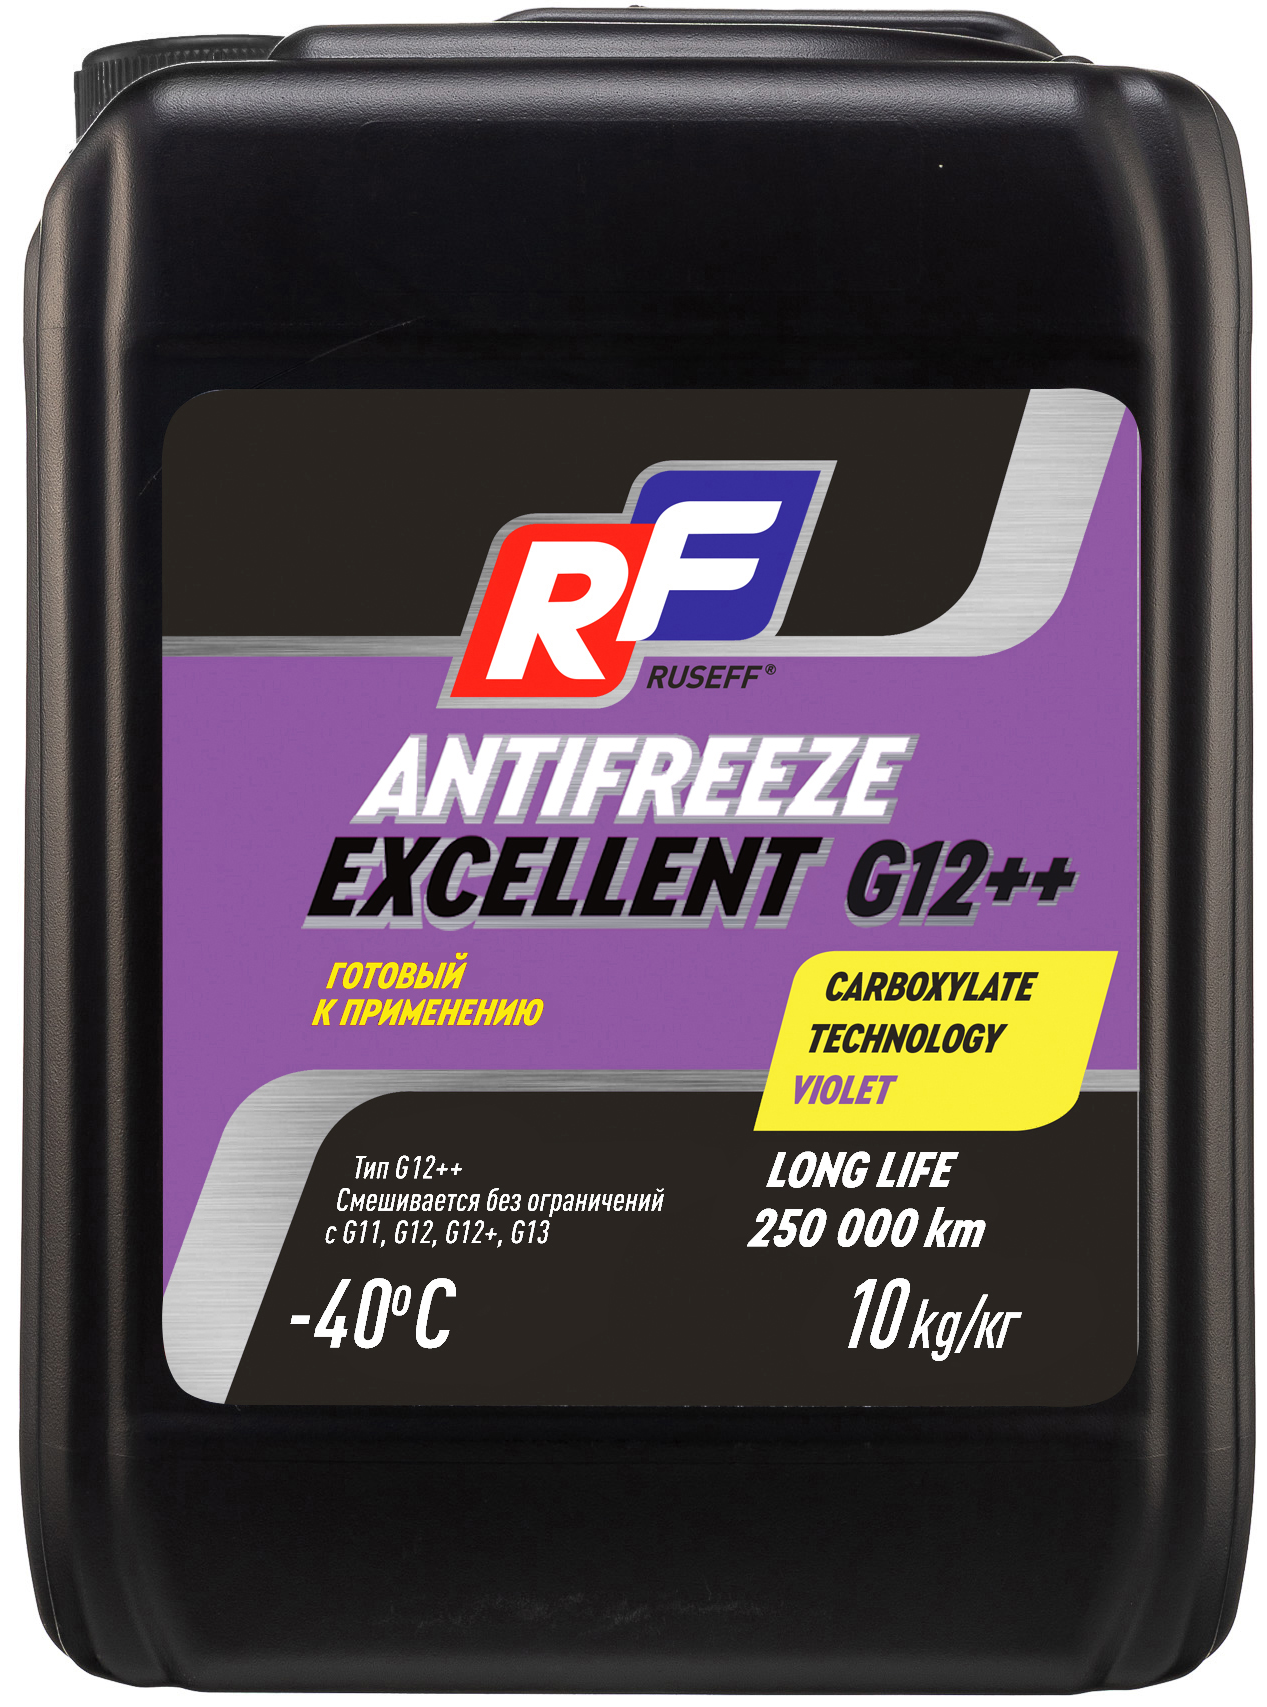 Антифриз, готовый раствор excellent g12++, -40°c, фиолетовый, 10кг - RUSEFF 17365N